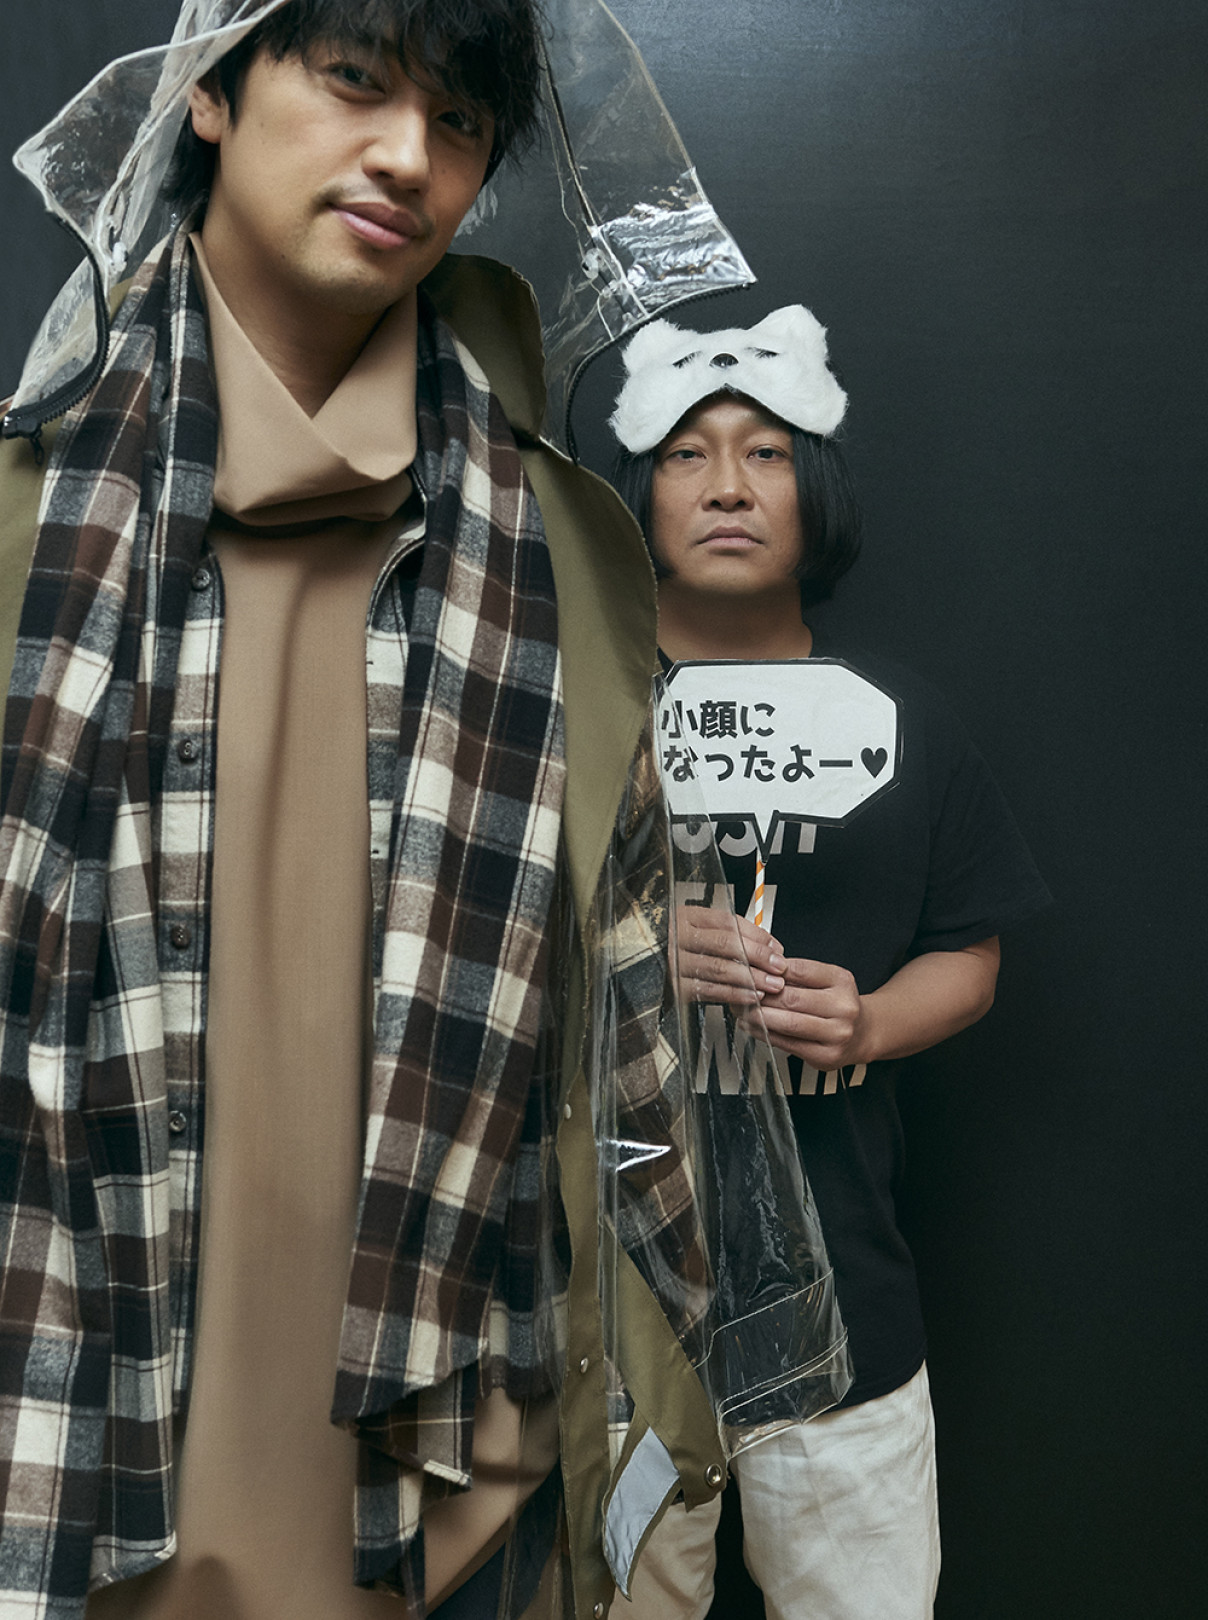 永野、斎藤工、金子ノブアキらによるクリエイティブ集団「チーム万力」。TGC出演をきっかけに描かれた永野の頭の中『MANRIKI』【INTERVIEW】